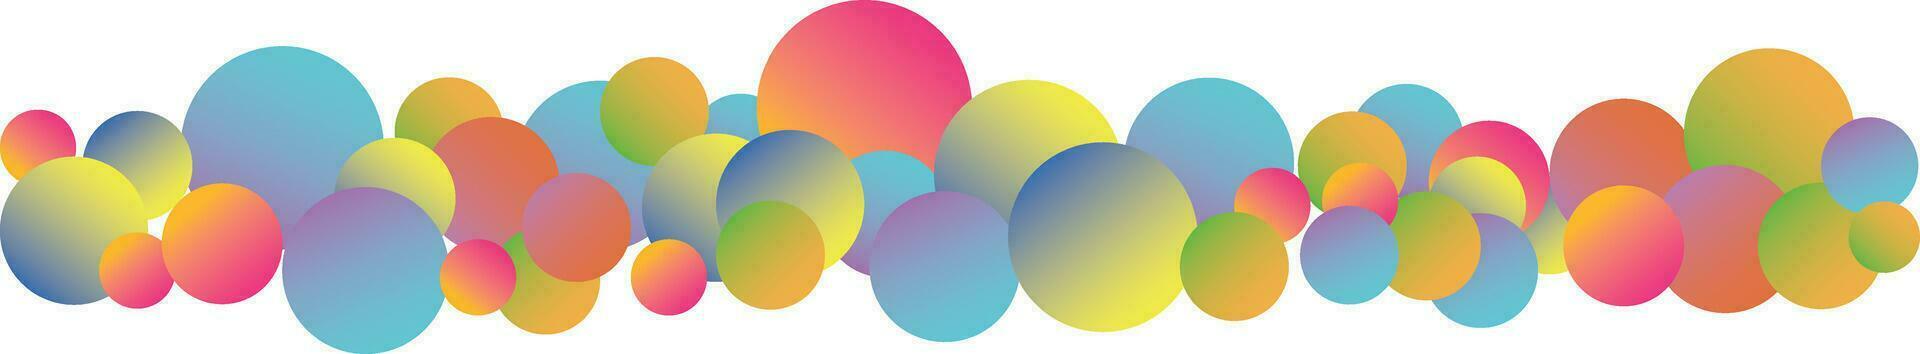 vistoso arco iris mate pelotas en diferente tamaños resumen composición con multicolor volador esferas vector